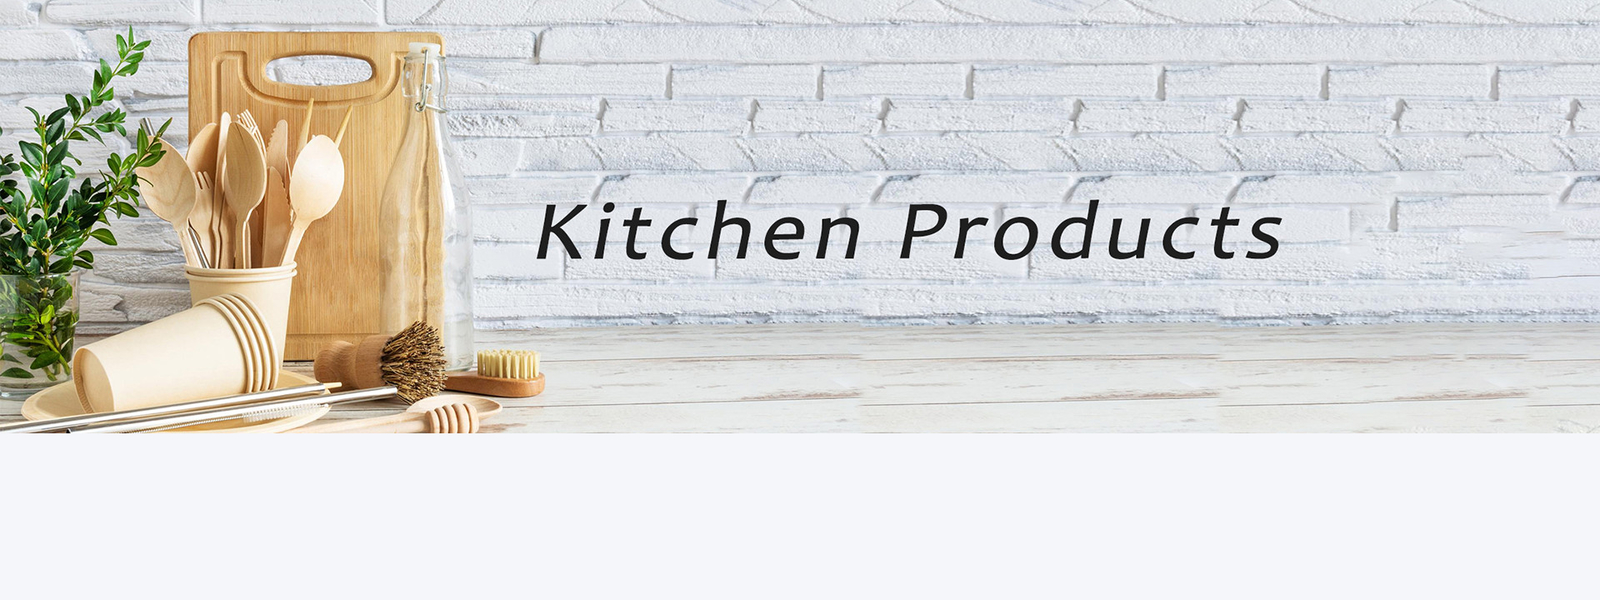 ποιότητας Προϊόντα οικιακών κουζινών εργοστάσιο